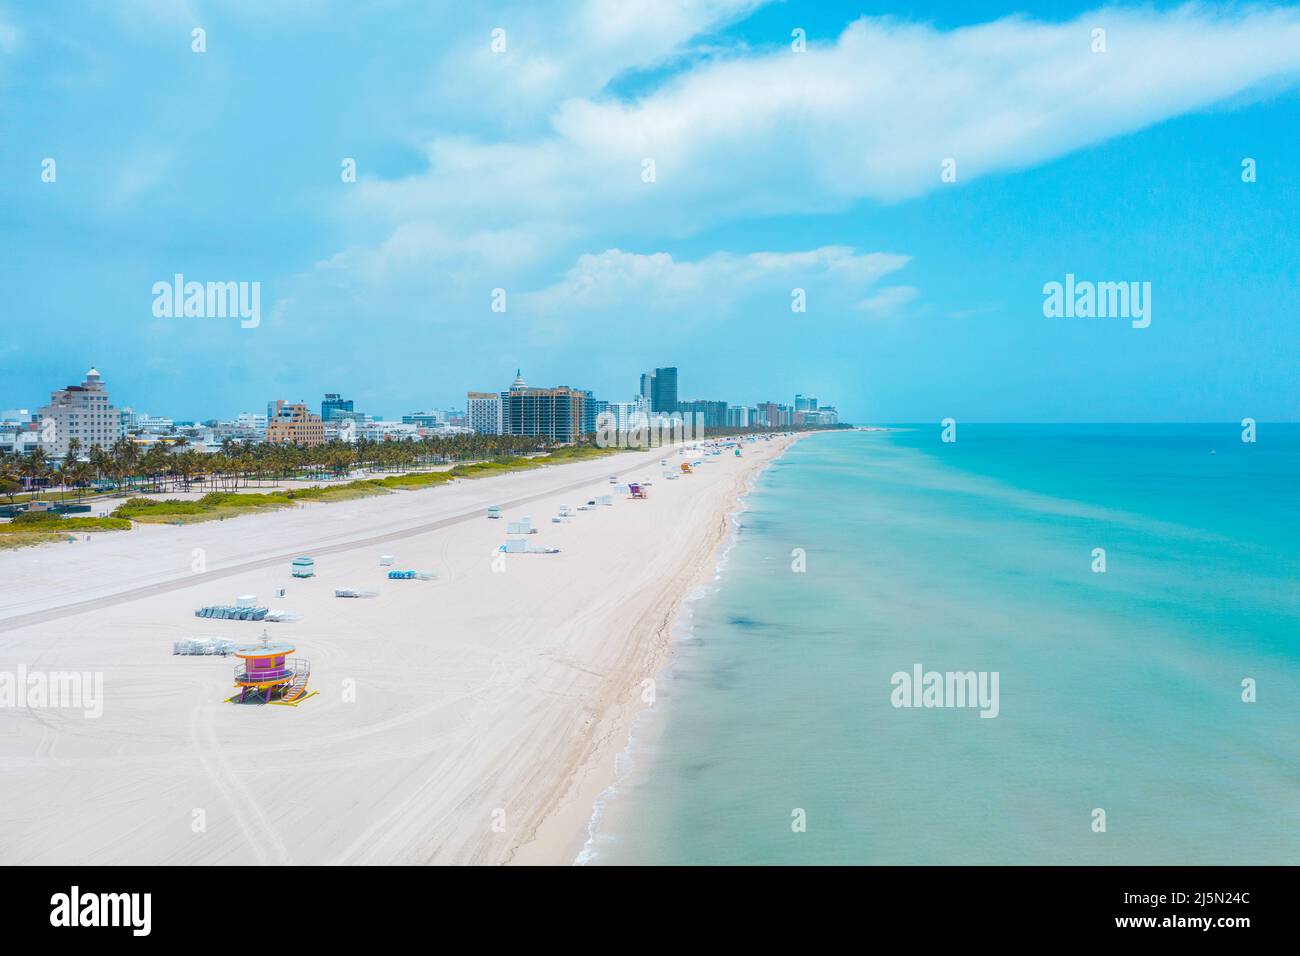 White sand beach in Miami, Florida Stock Photo